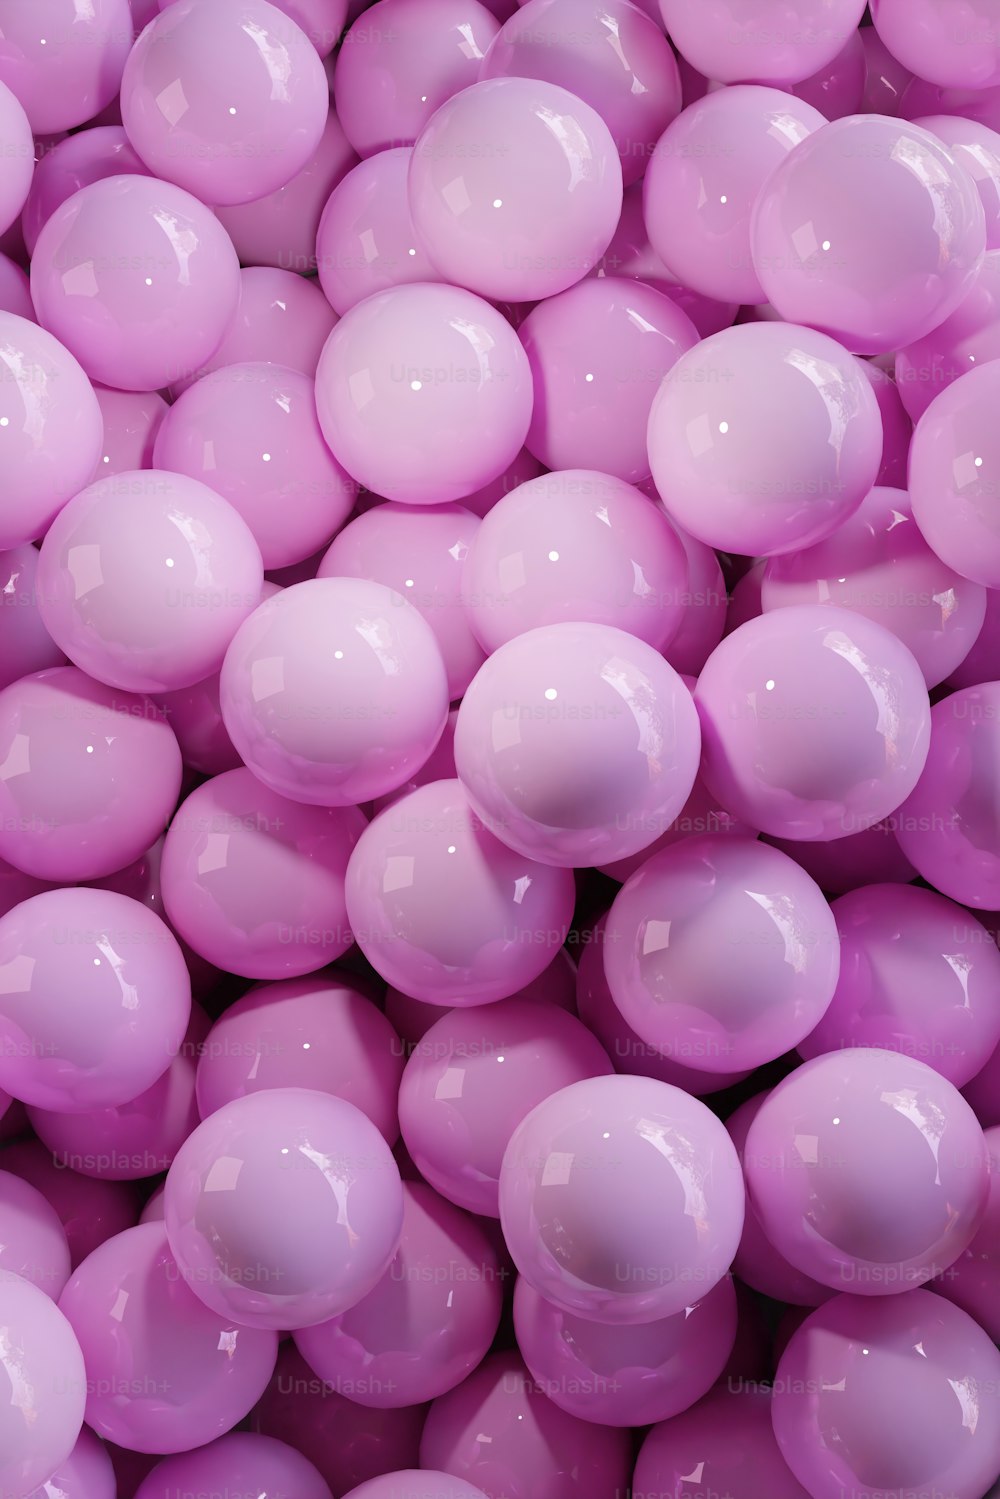 Un primer plano de un montón de bolas rosadas